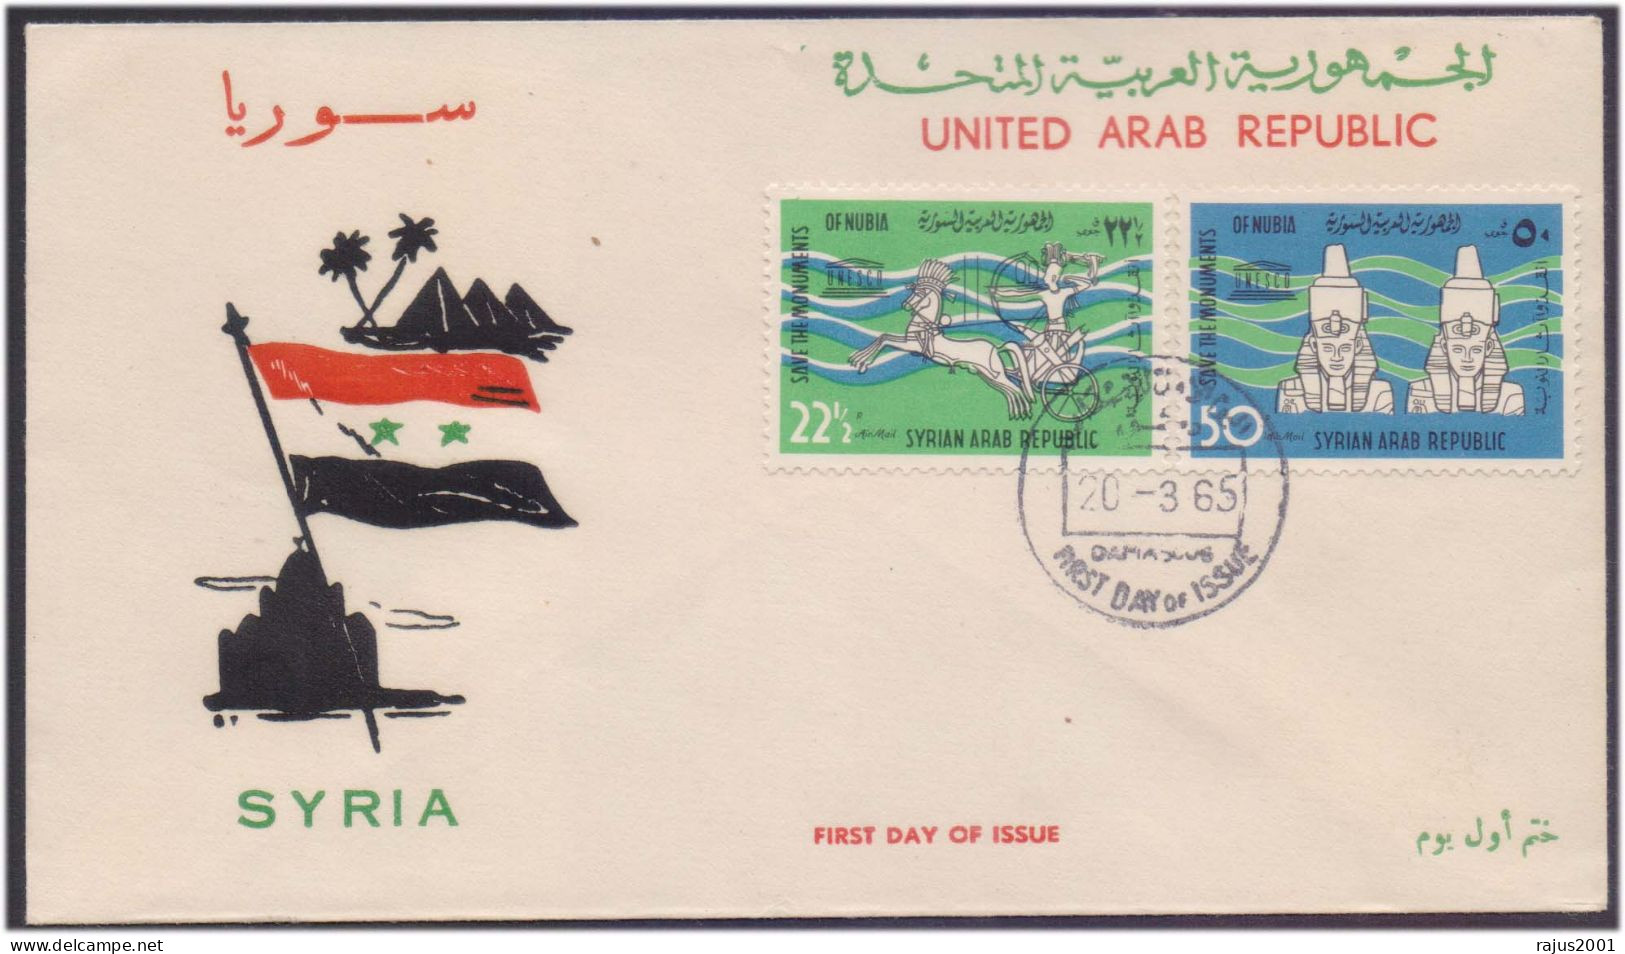 Save Monuments Of Nubia, Abu Simbel Temple, Egyptology Pharaon, Pharaoh, Mythology, UNESCO, Syria FDC 1965 - Egyptology